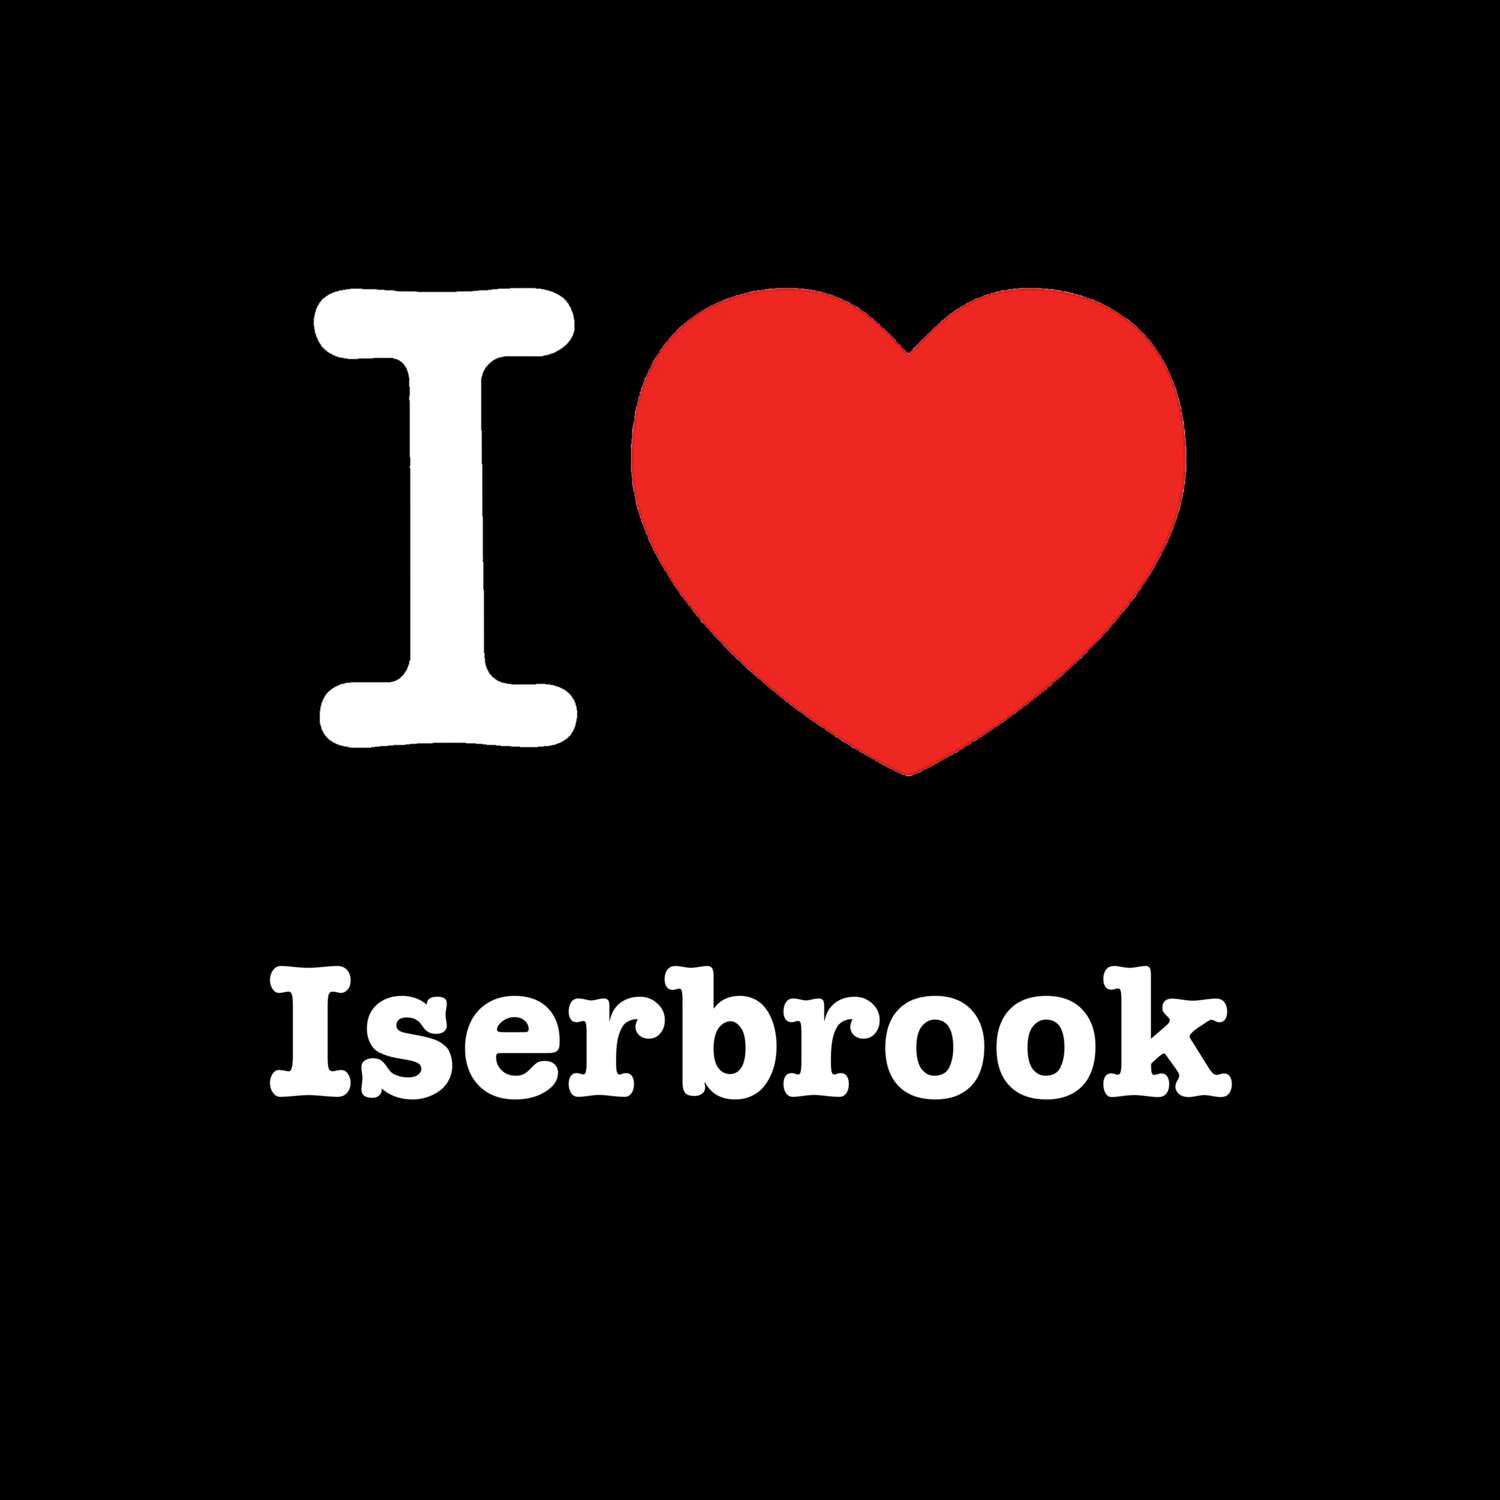 Iserbrook T-Shirt »I love«